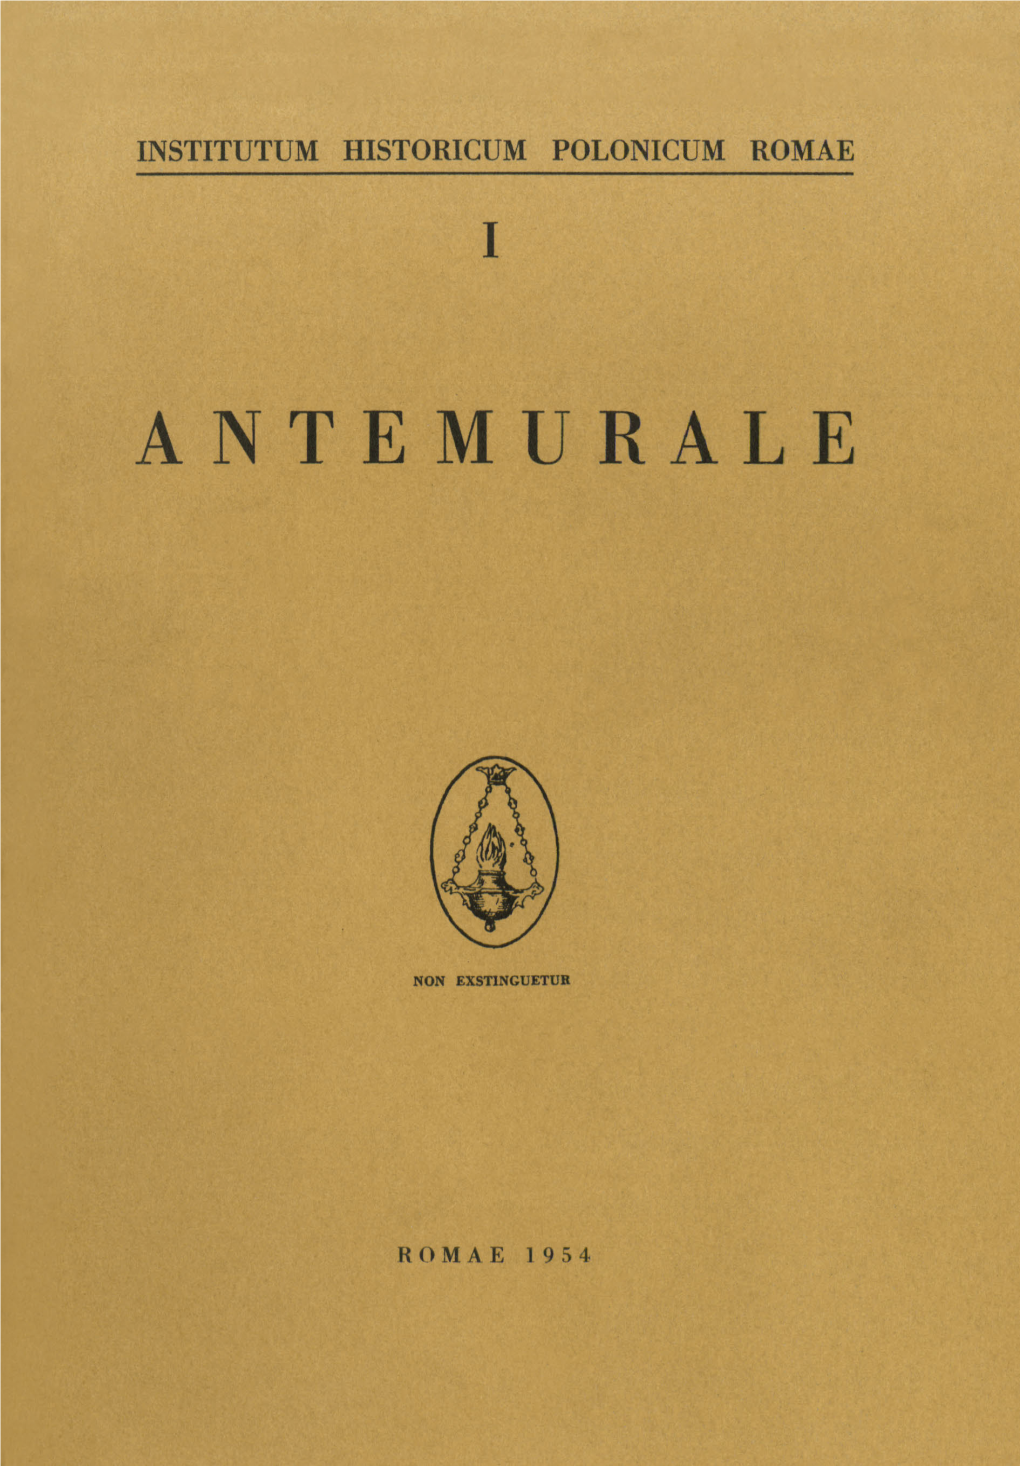 Antemurale, I, 1954